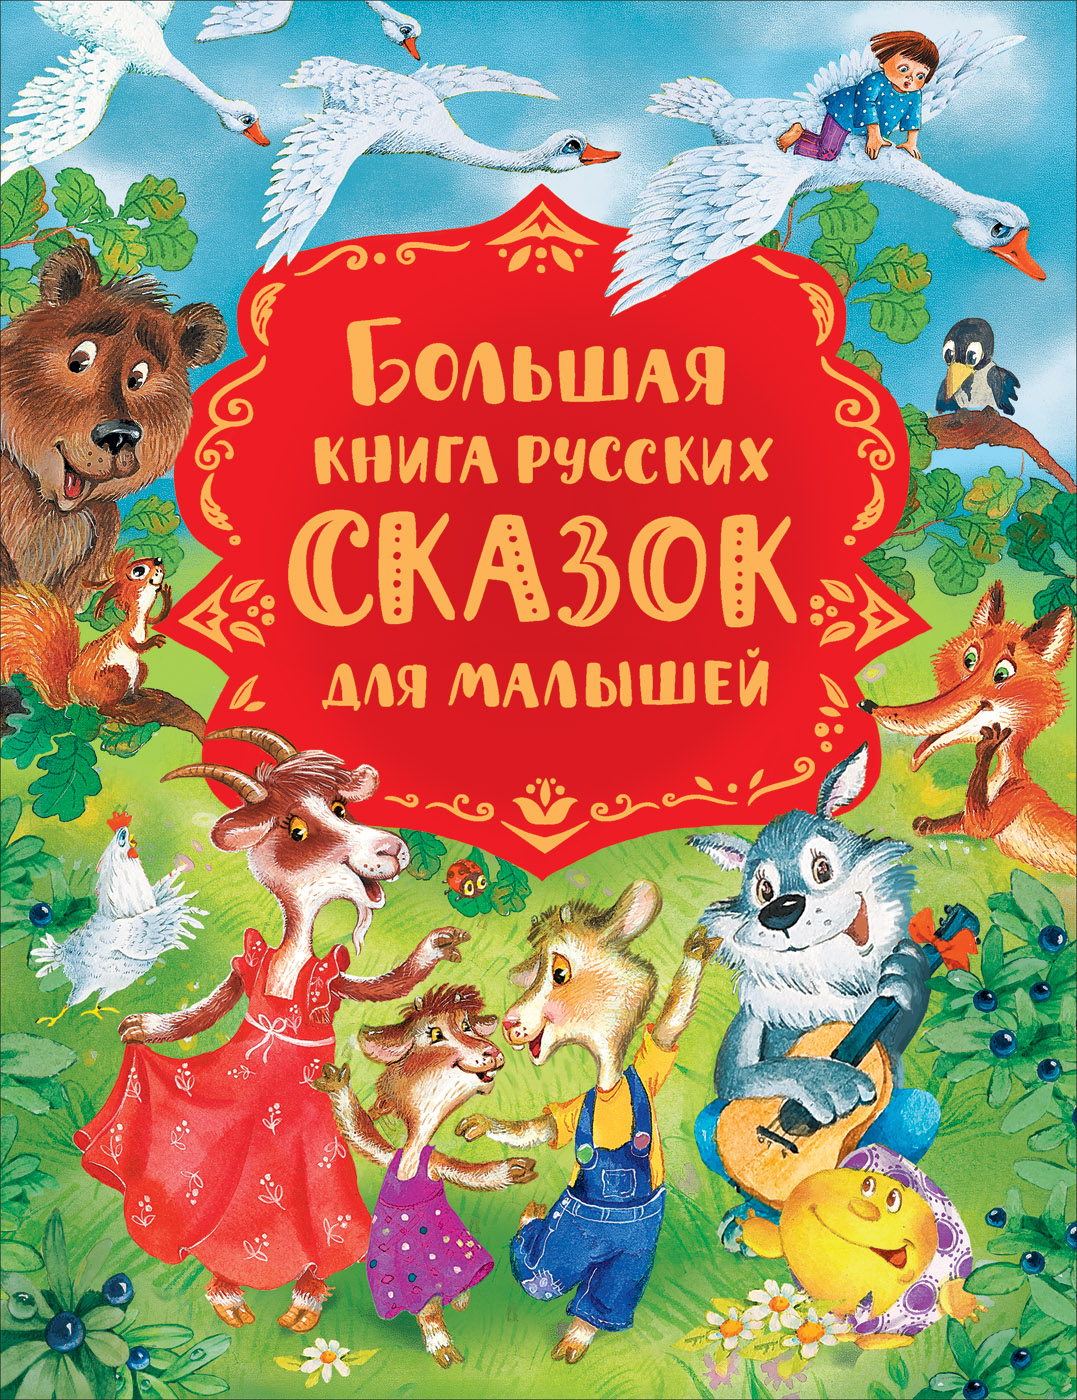 Булатов Михаил Александрович - Большая книга русских сказок для малышей